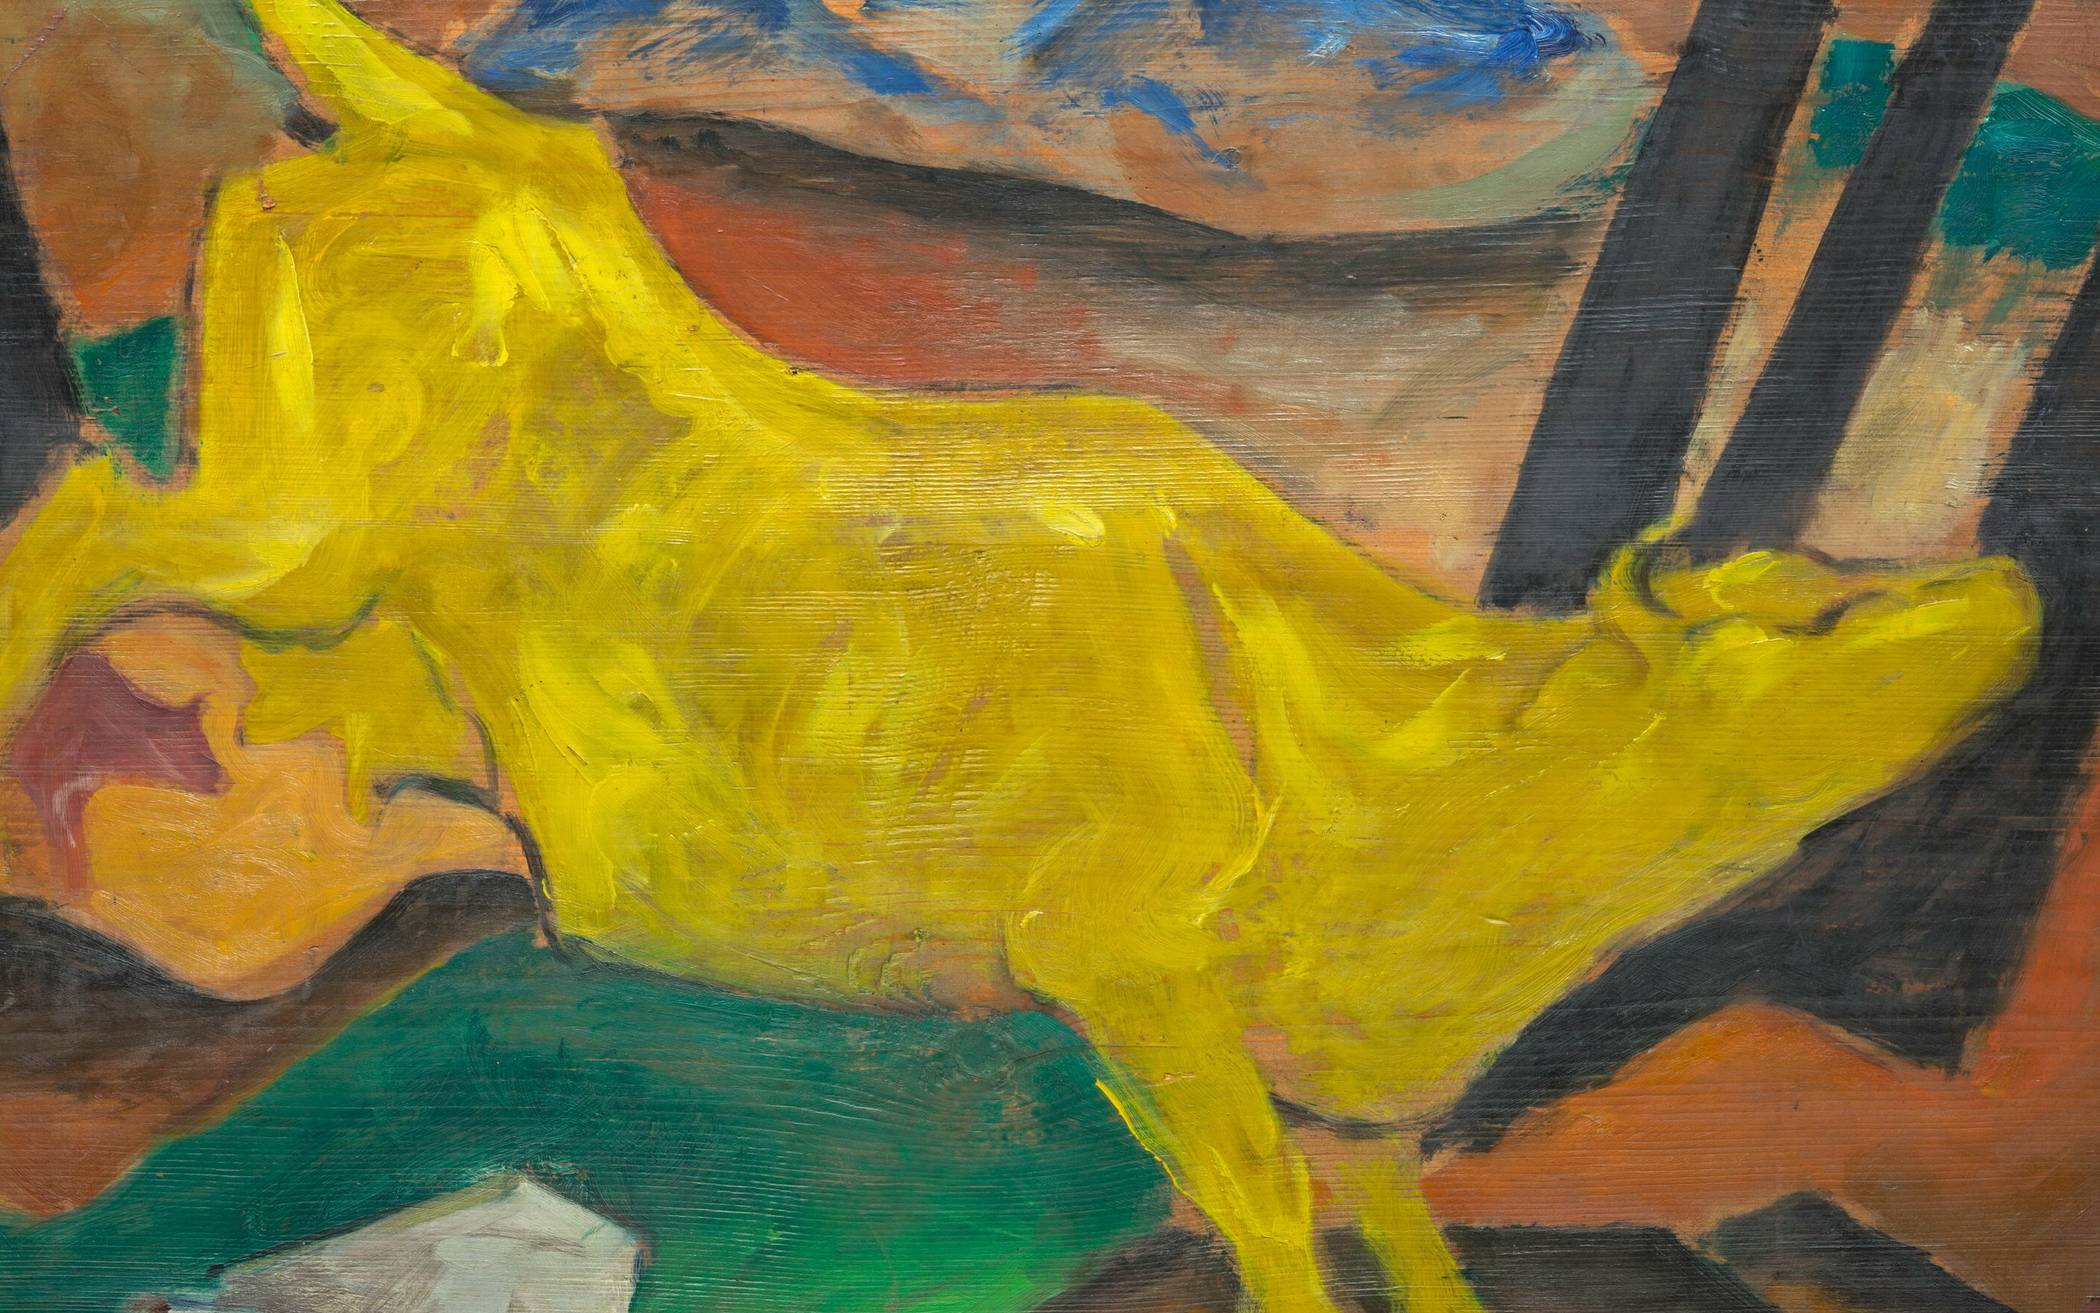  „Die gelbe Kuh“ von „Blauer Reiter“-Mitglied Franz Marc aus dem Jahr 1911. 